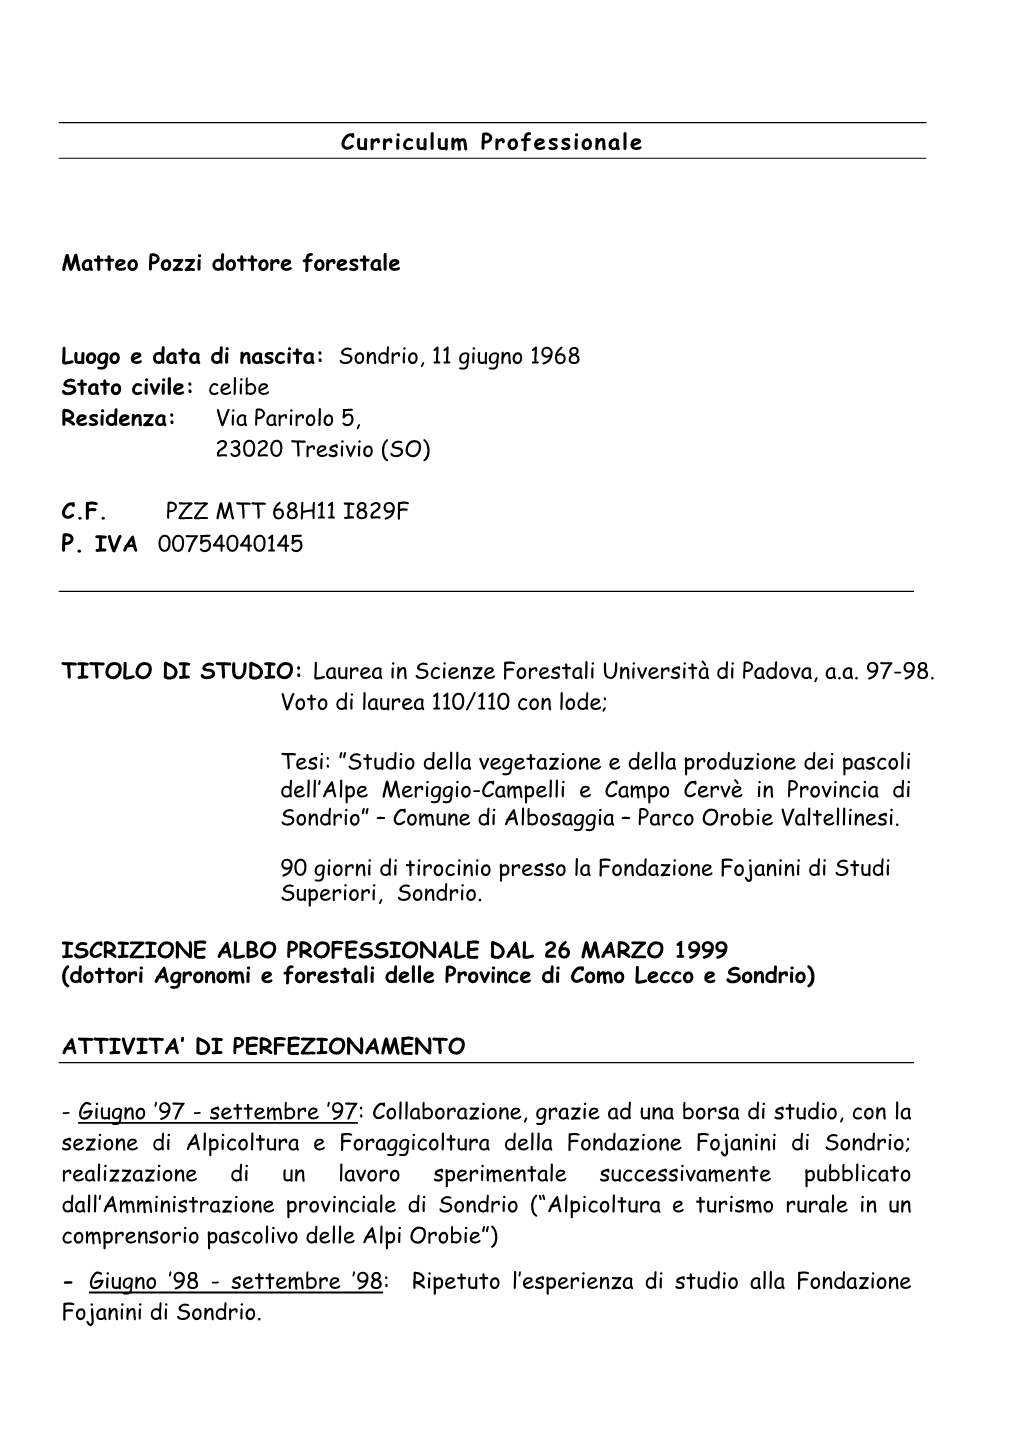 Curriculum Professionale Matteo Pozzi Dottore Forestale Luogo E Data Di Nascita: Sondrio, 11 Giugno 1968 Stato Civile: Celibe Re